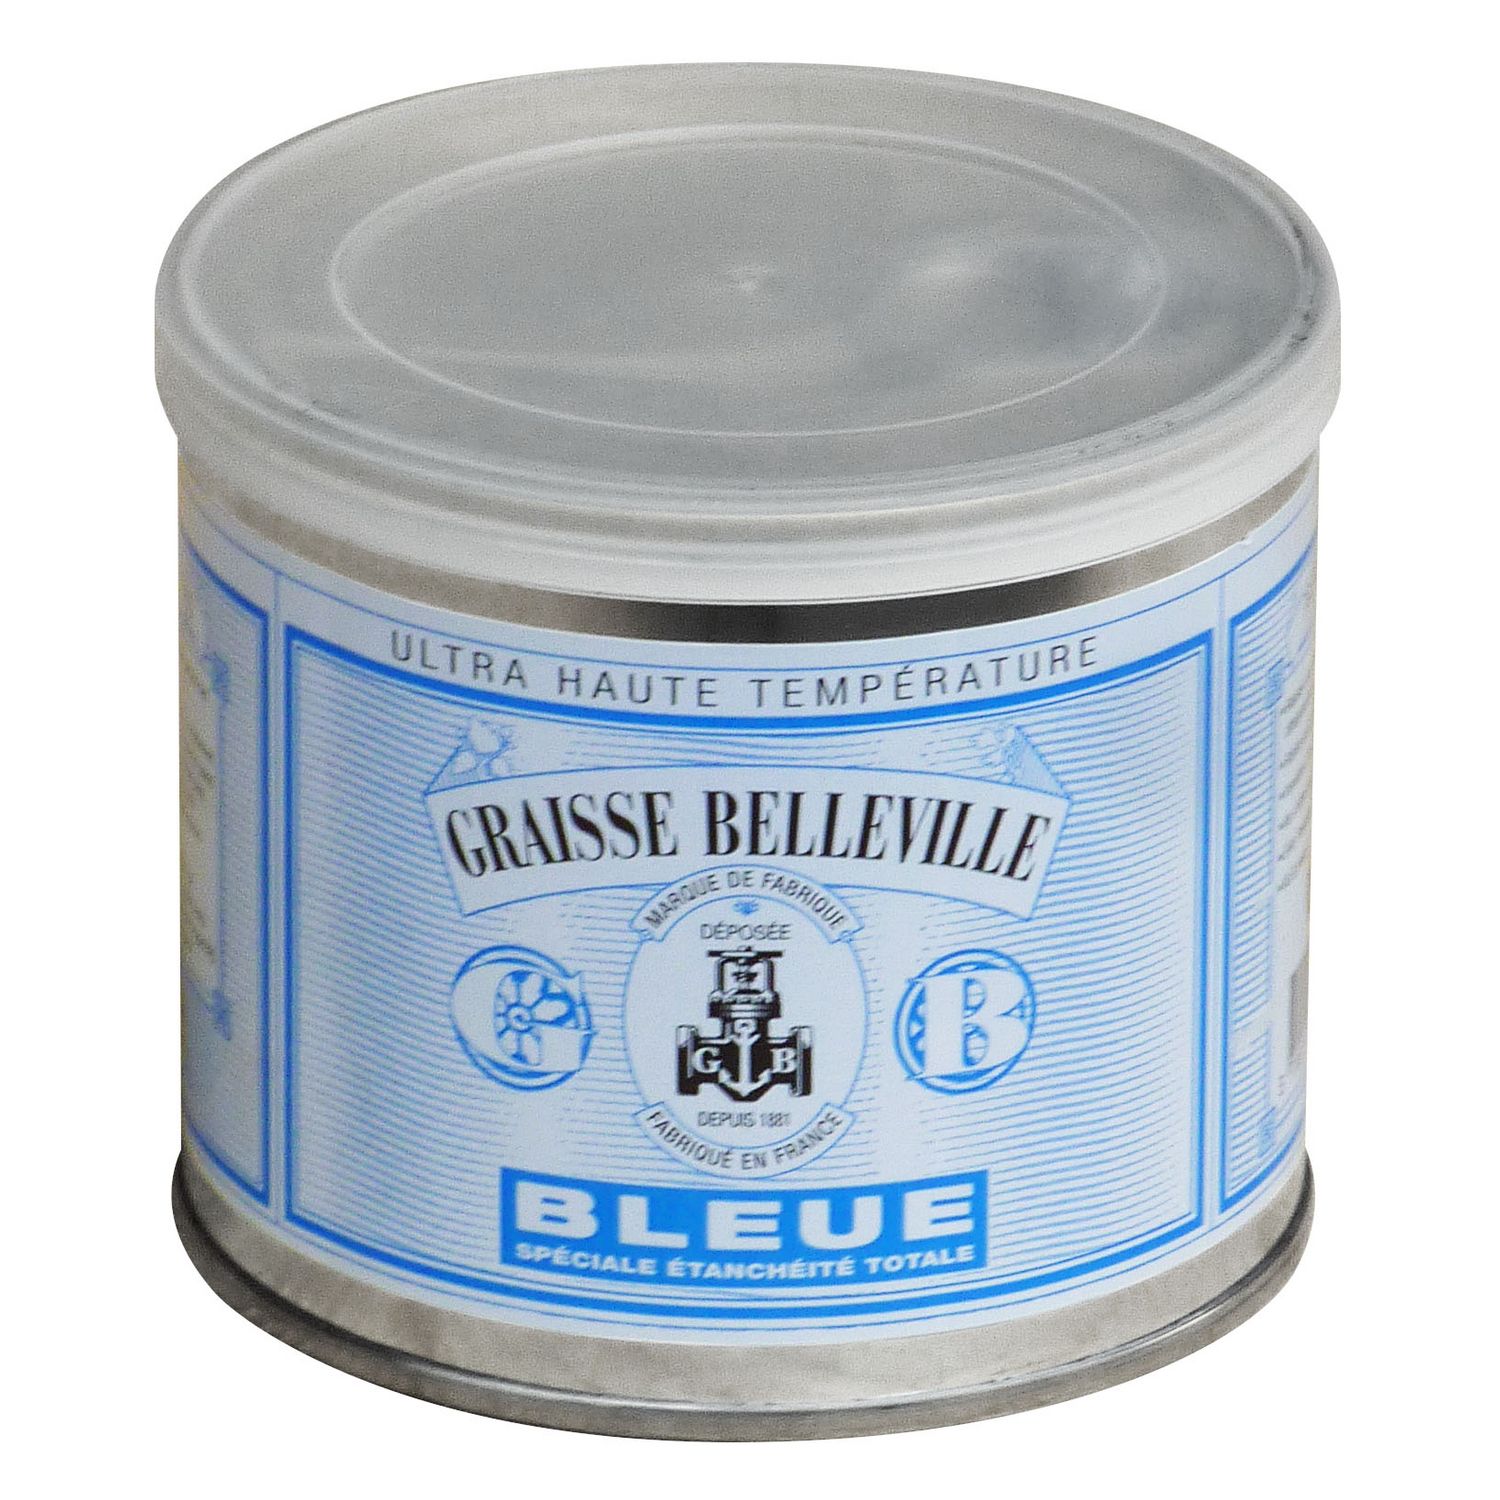 GRAISSE BELLEVILLE Graisse belleville bleu spécial étanchéité 1 kg pas cher  